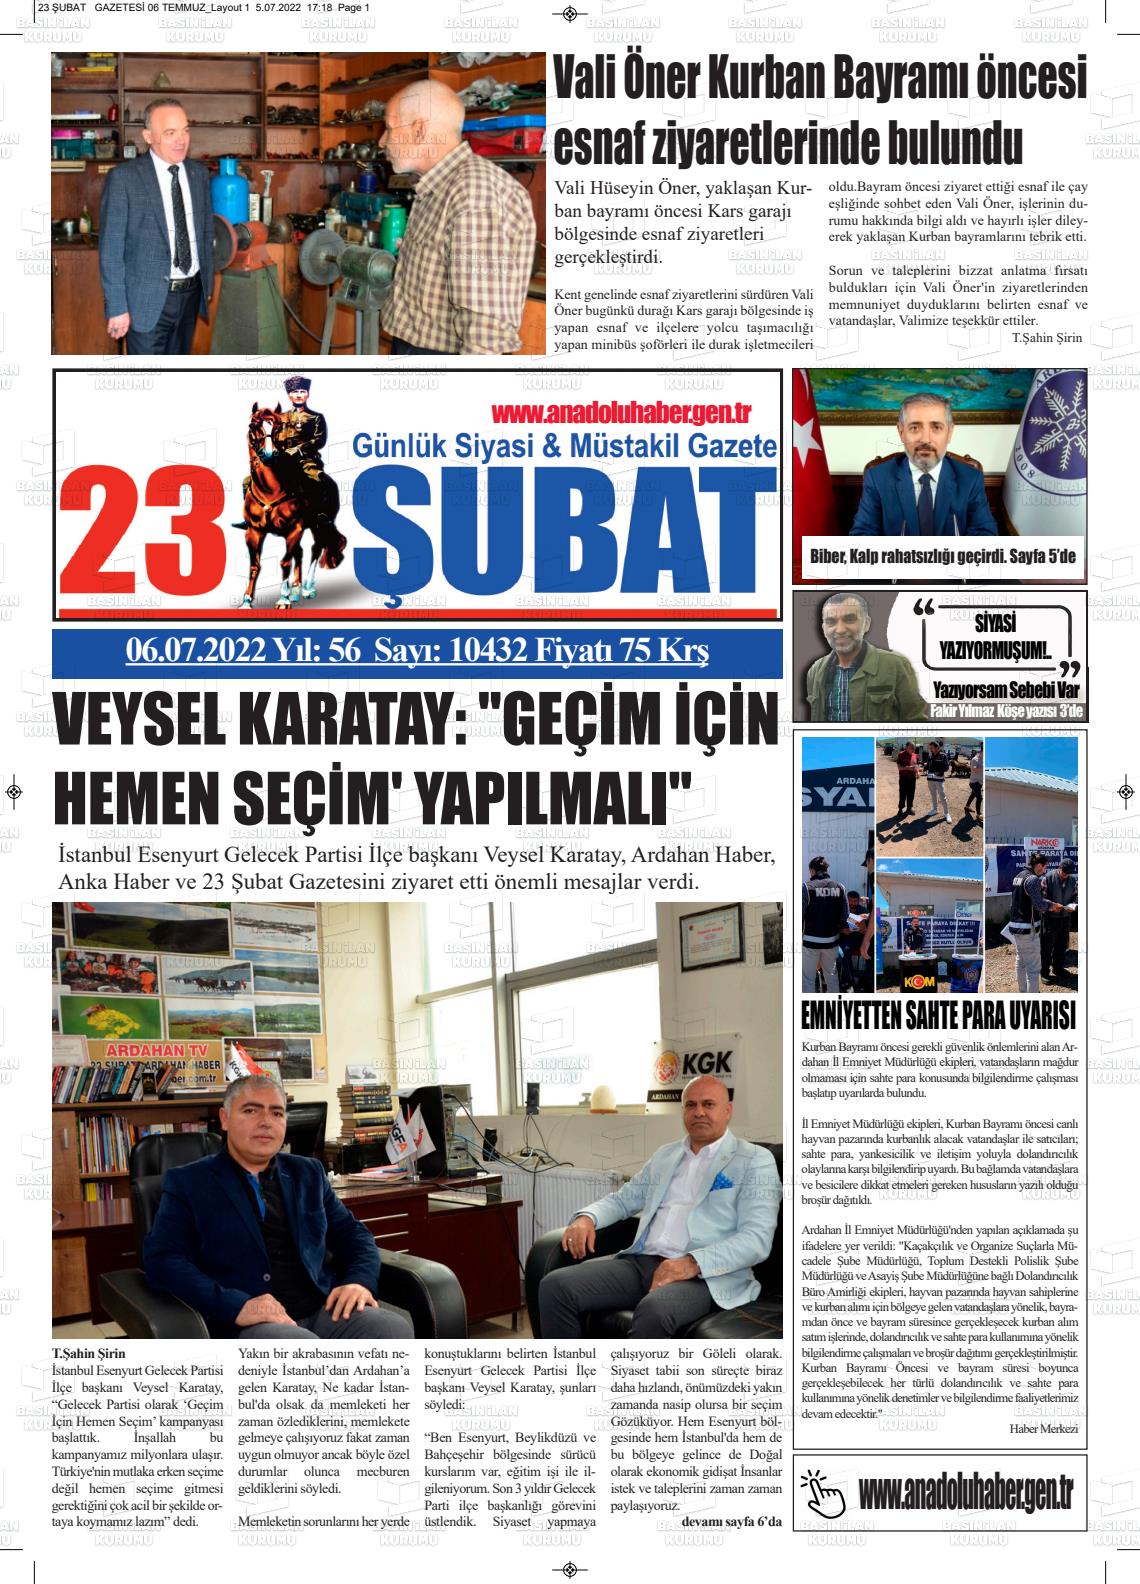 06 Temmuz 2022 23 Şubat Gazete Manşeti